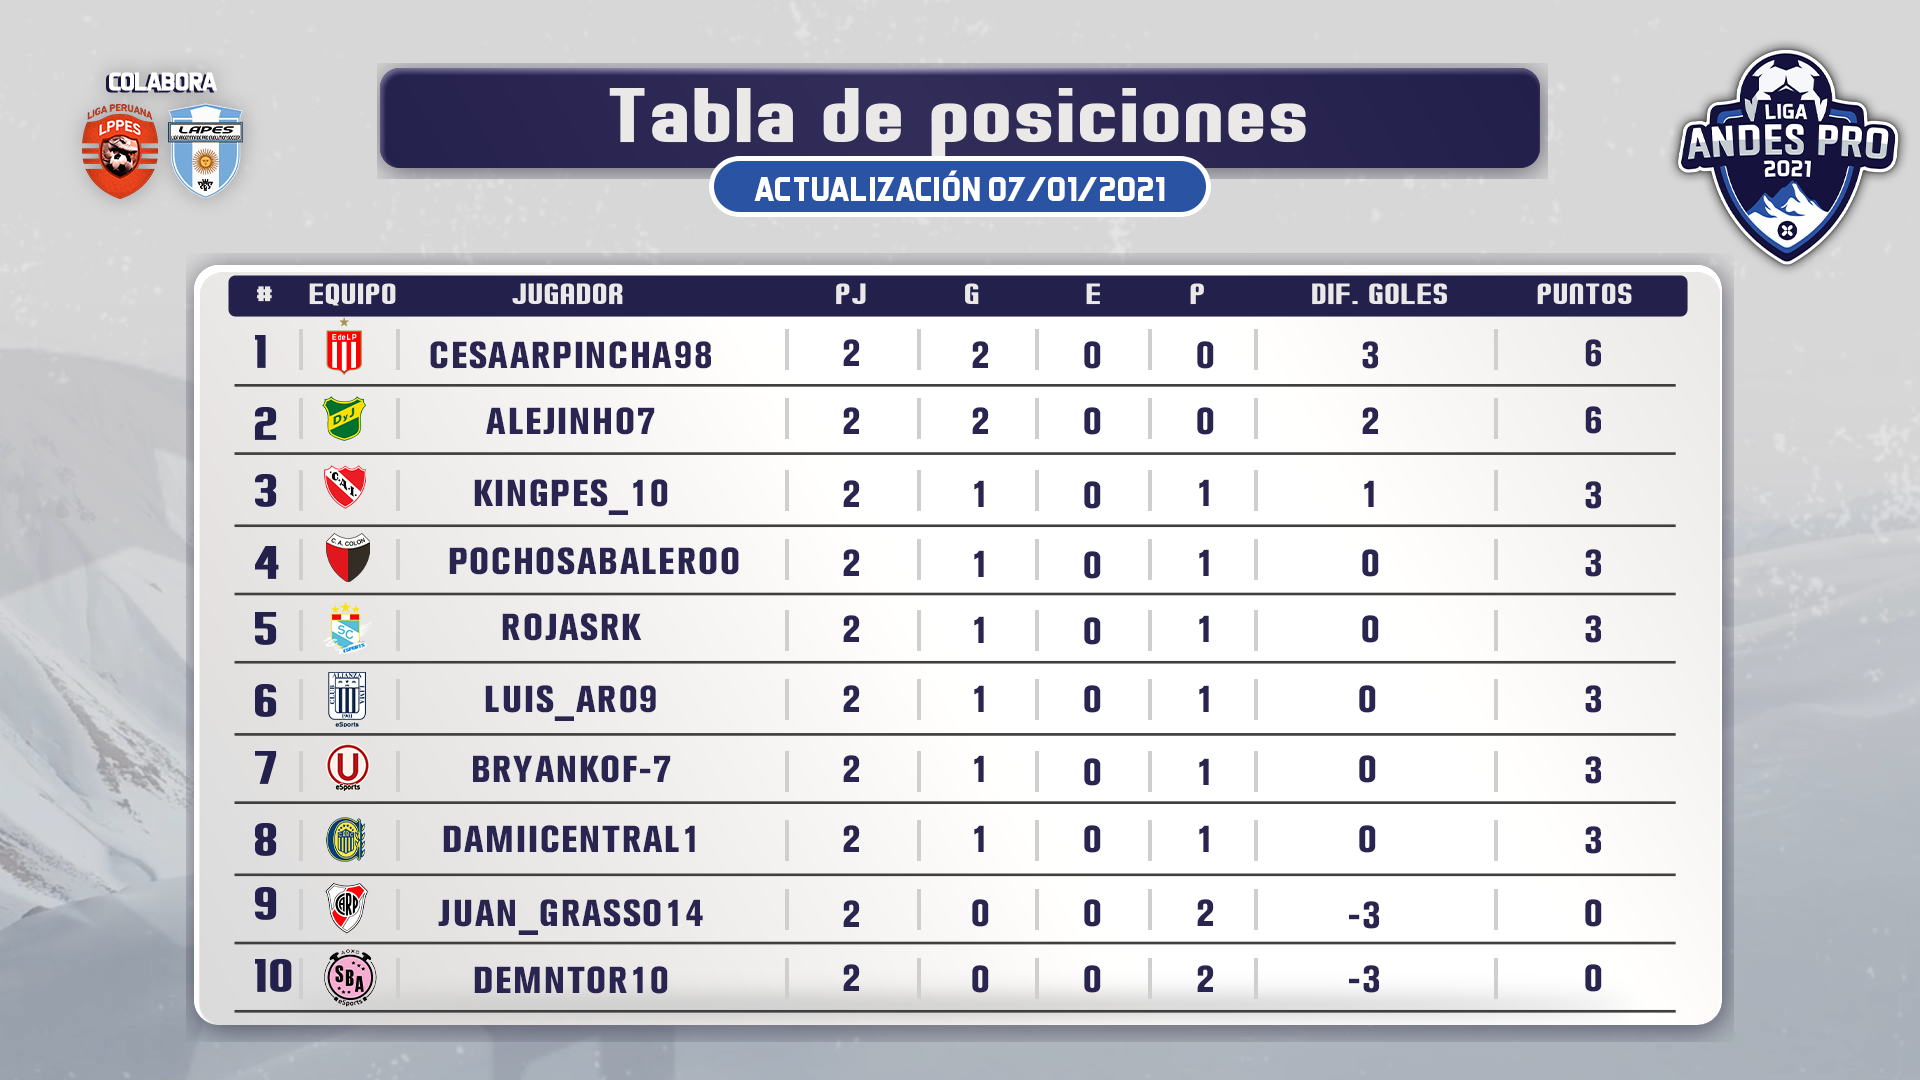 Así va la tabla de clasificación de la Liga Andes Pro 2021! Viax Esports